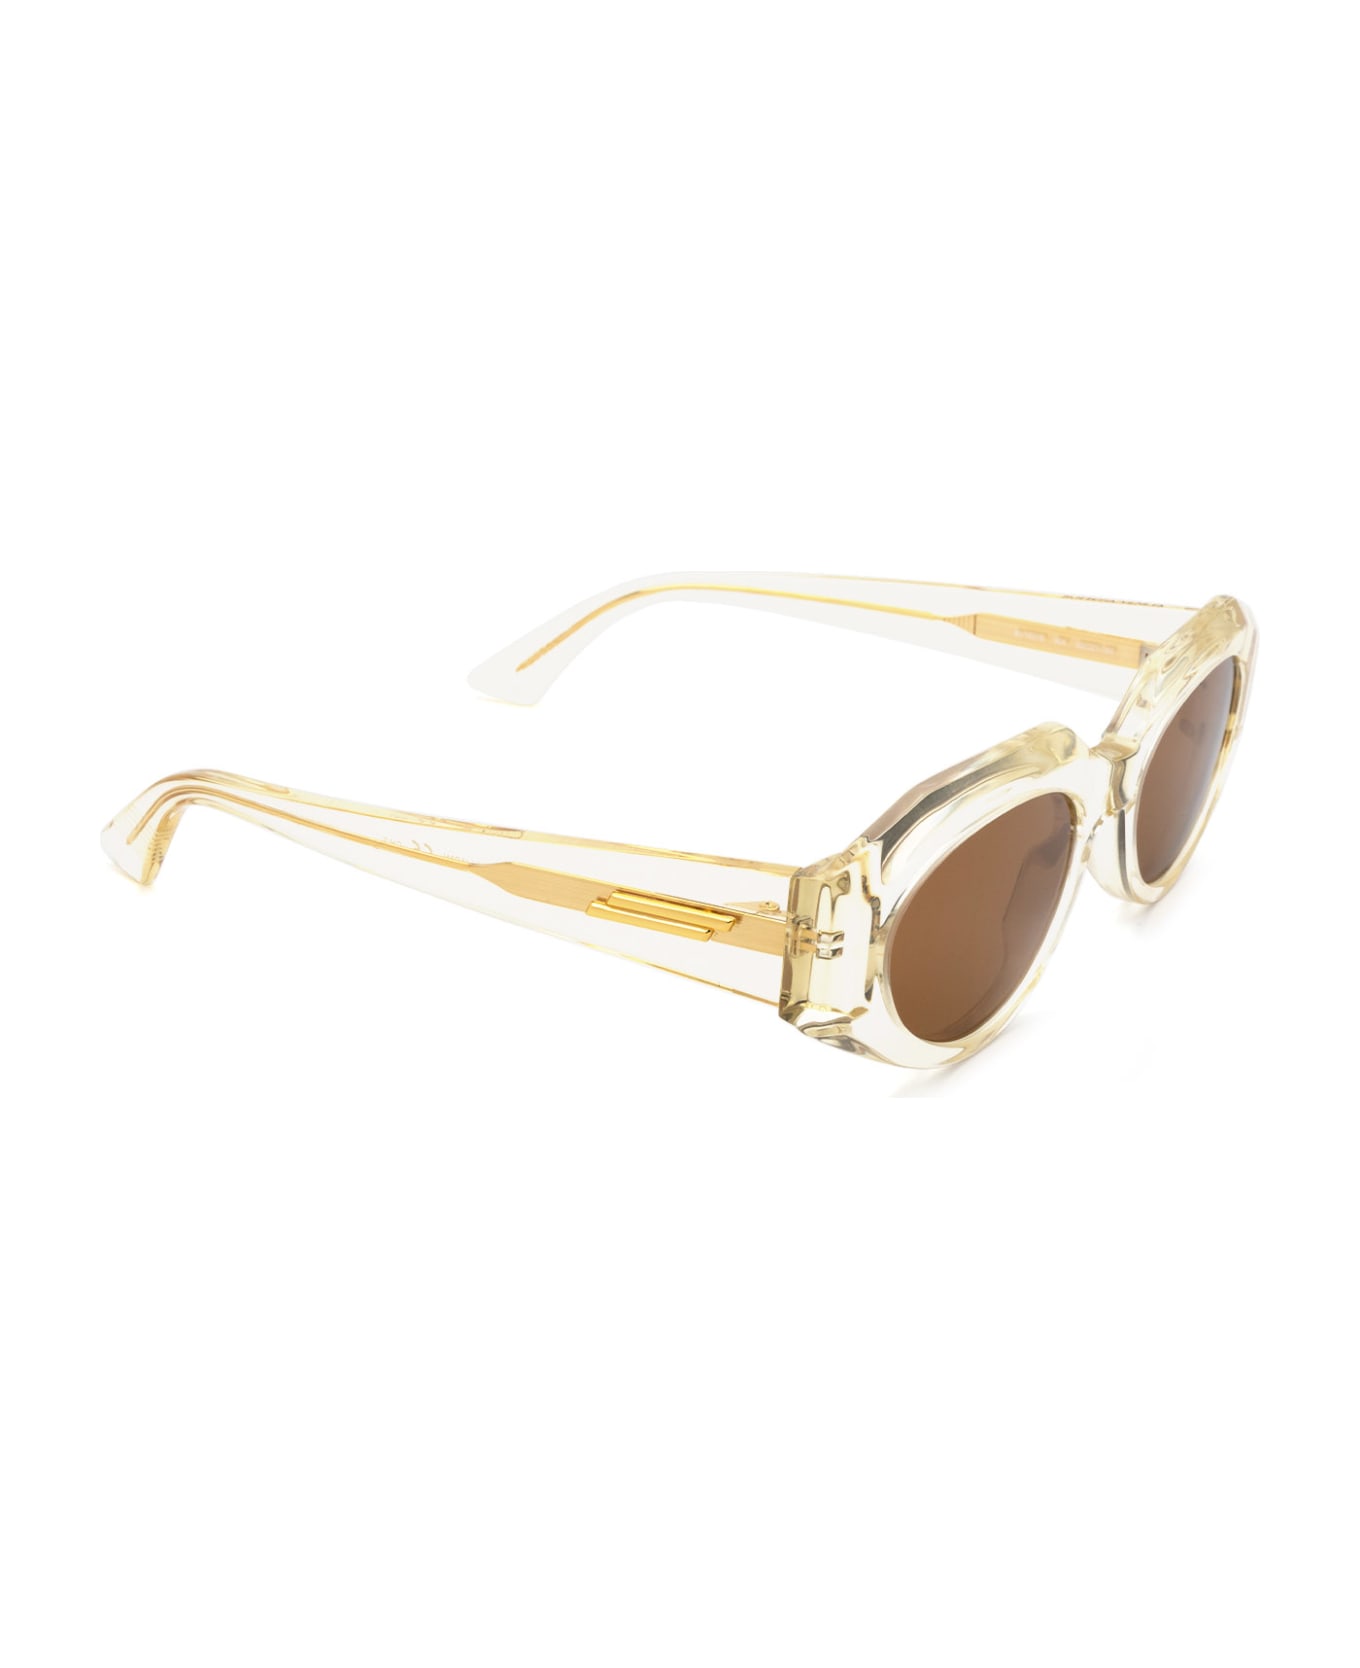 Bottega Veneta Eyewear Bv1031s Beige Sunglasses - Beige